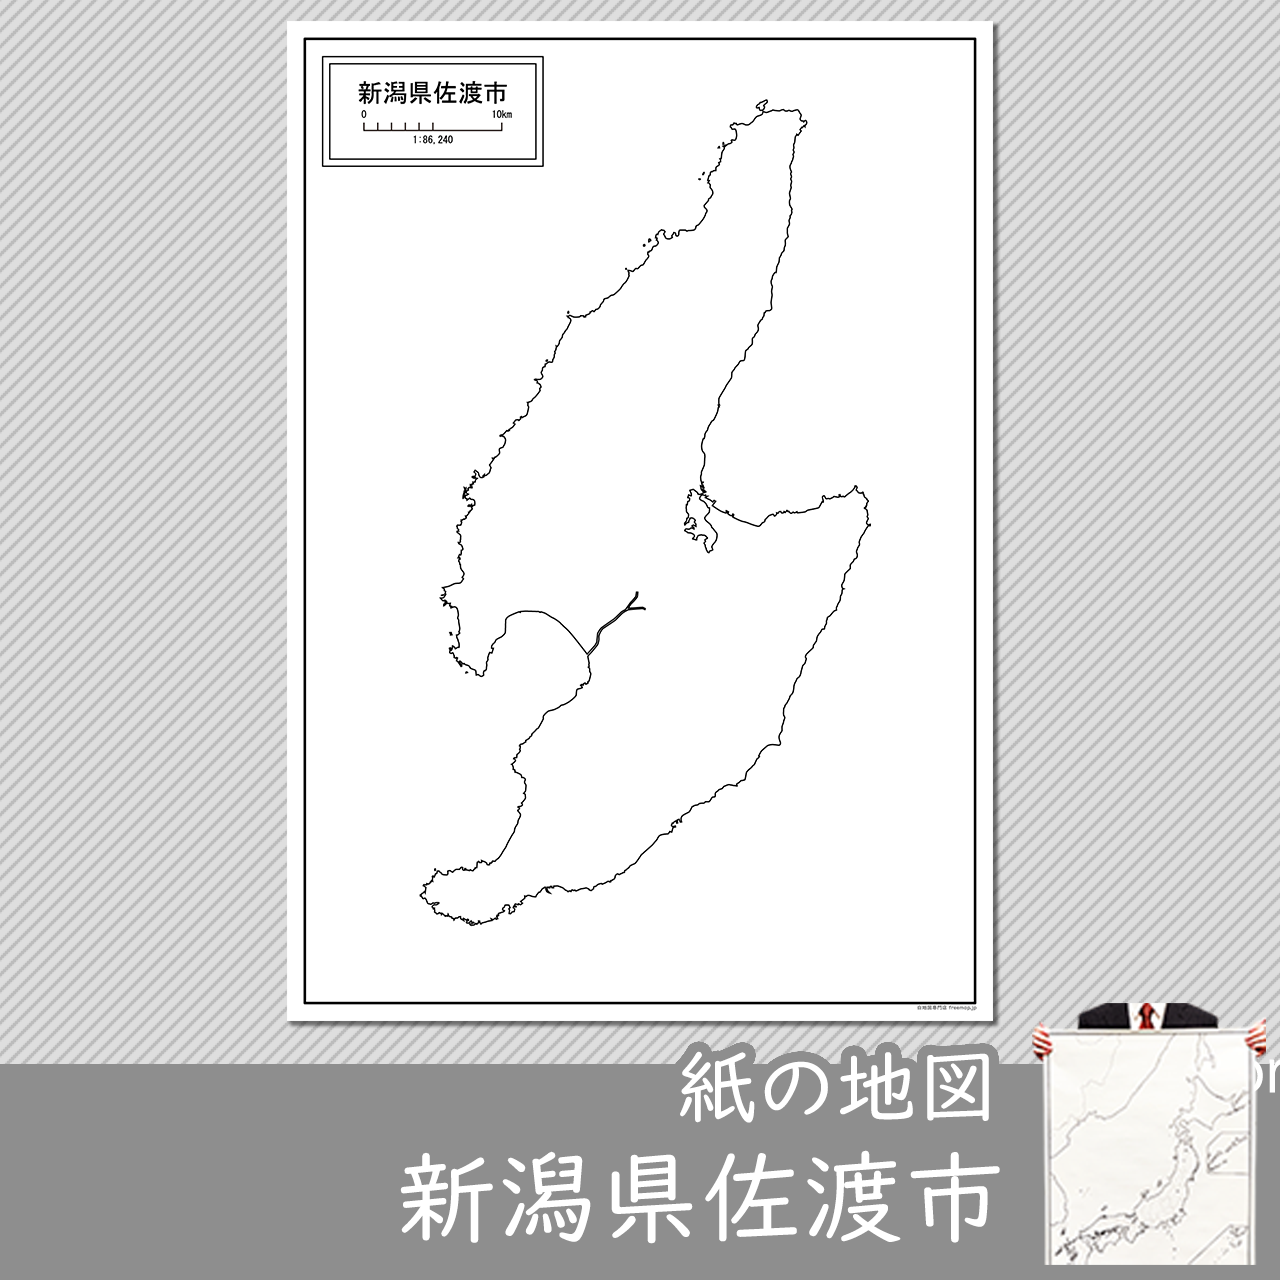 佐渡市の紙の白地図のサムネイル